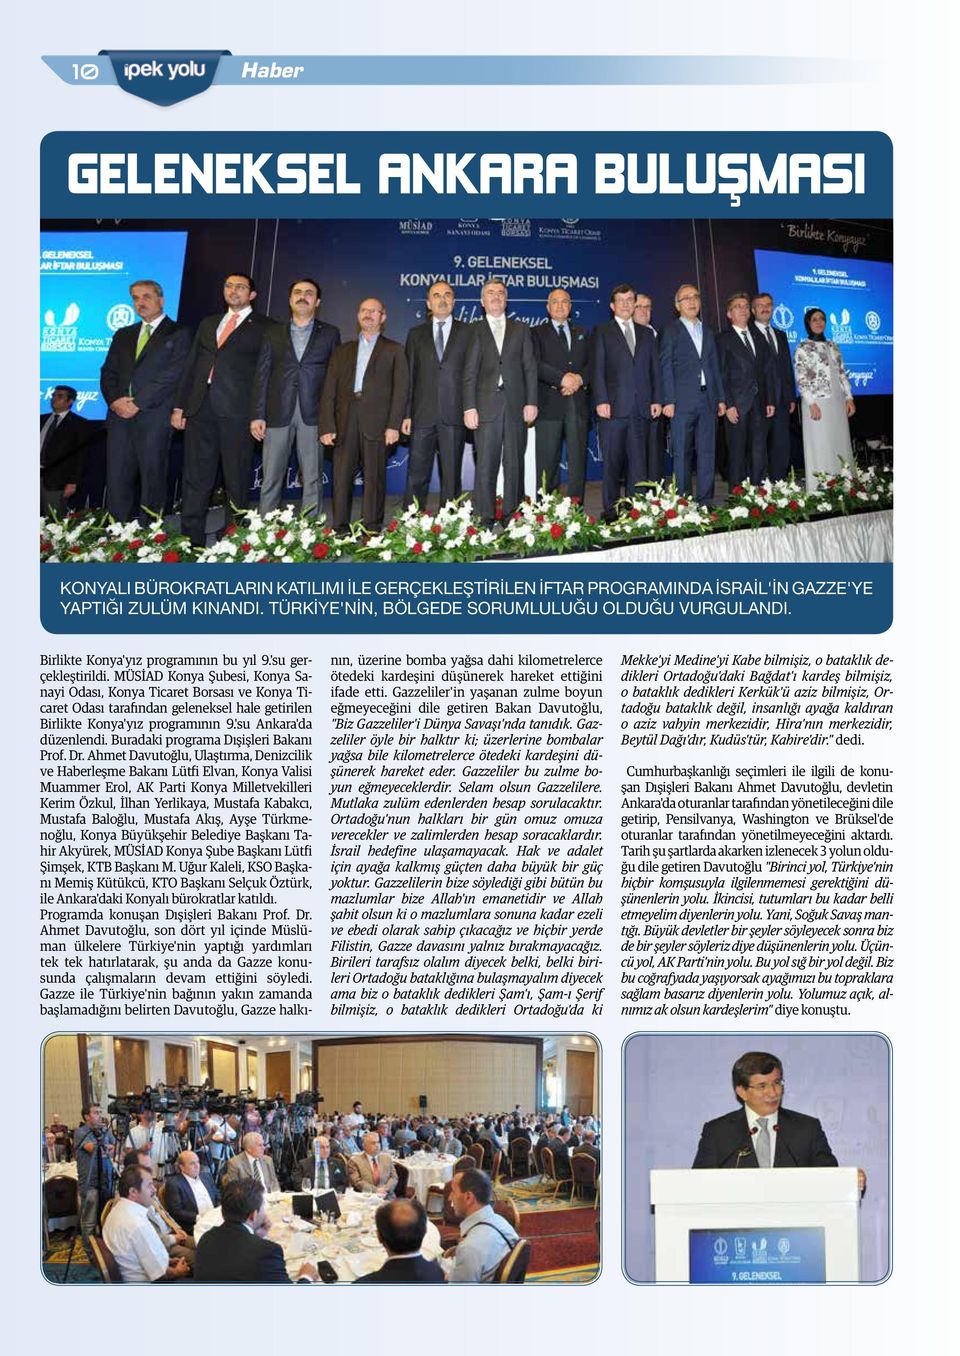 MÜSİAD Konya Şubesi, Konya Sanayi Odası, Konya Ticaret Borsası ve Konya Ticaret Odası tarafından geleneksel hale getirilen Birlikte Konya'yız programının 9.'su Ankara'da düzenlendi.